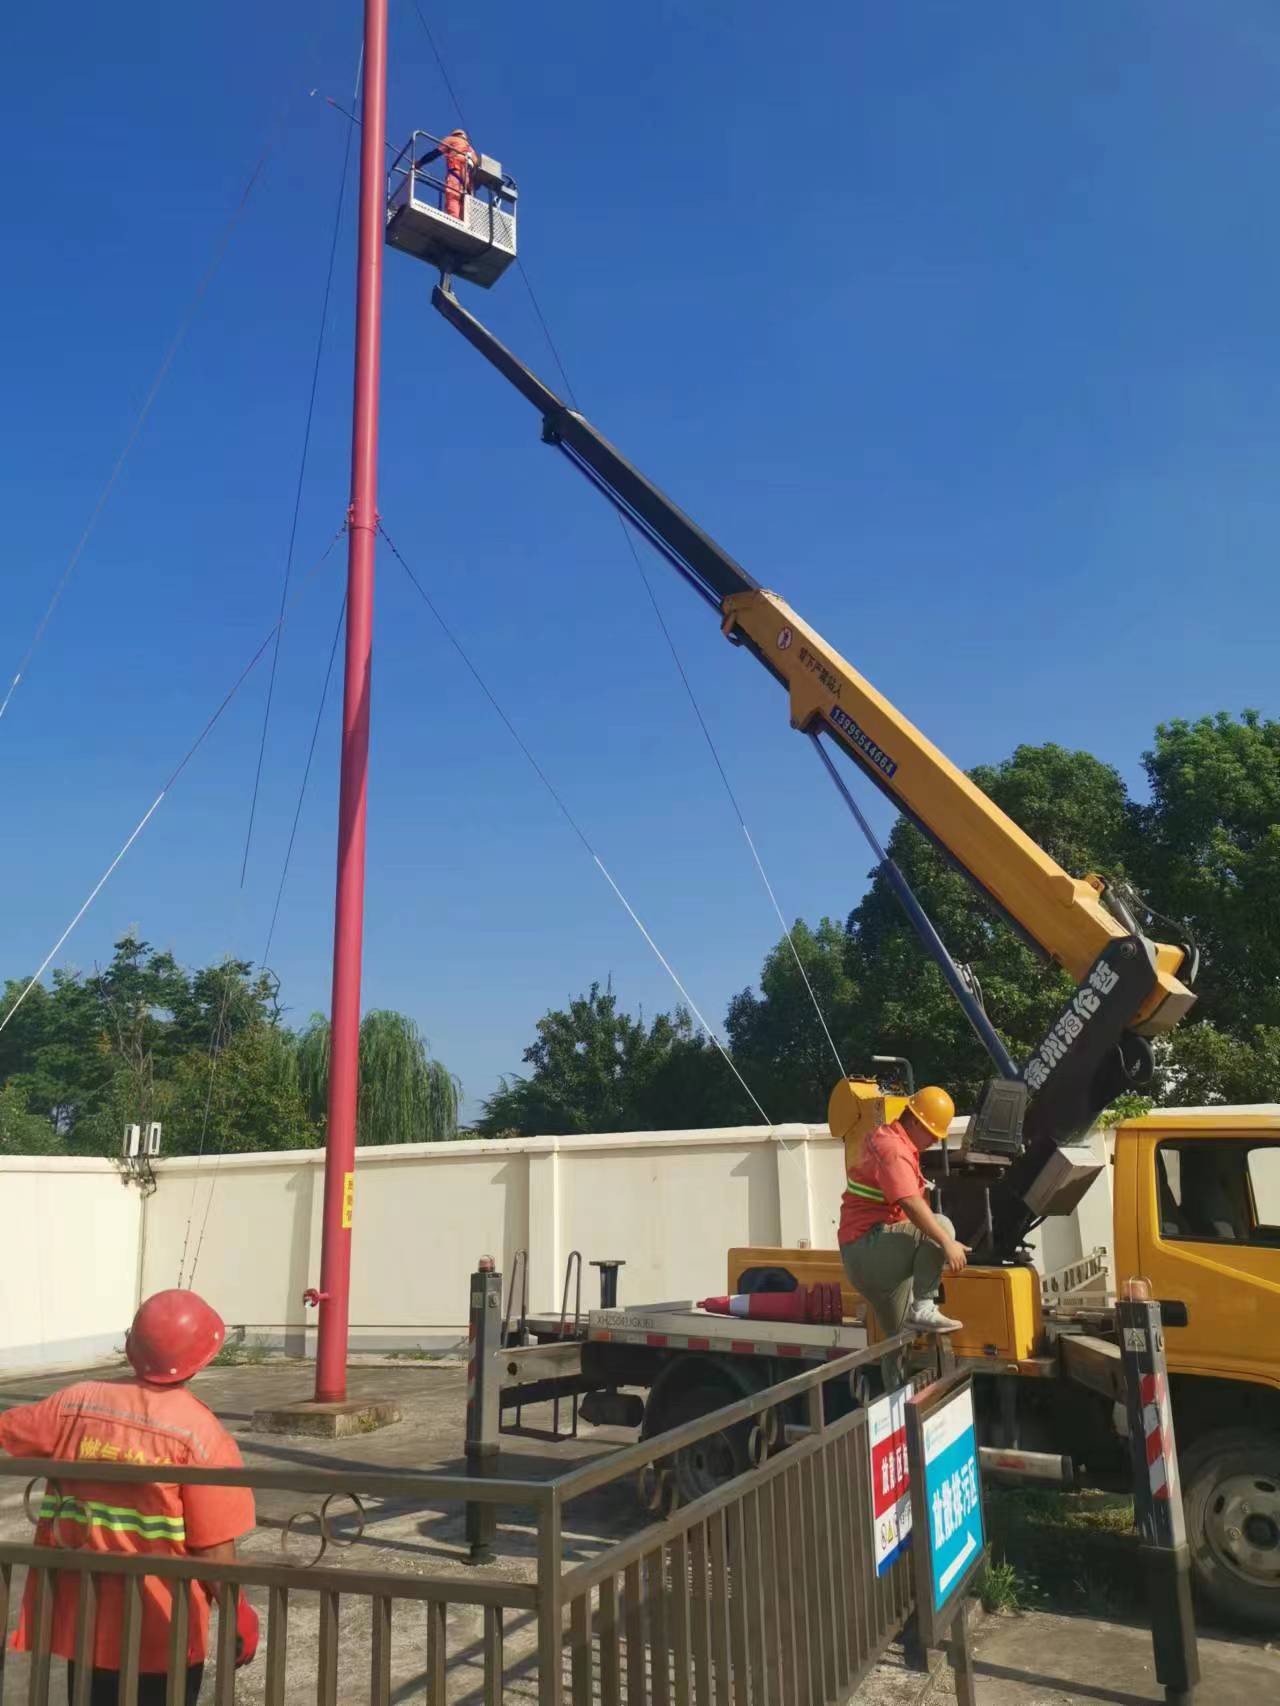 22米升降车煤气管道检修施工现场